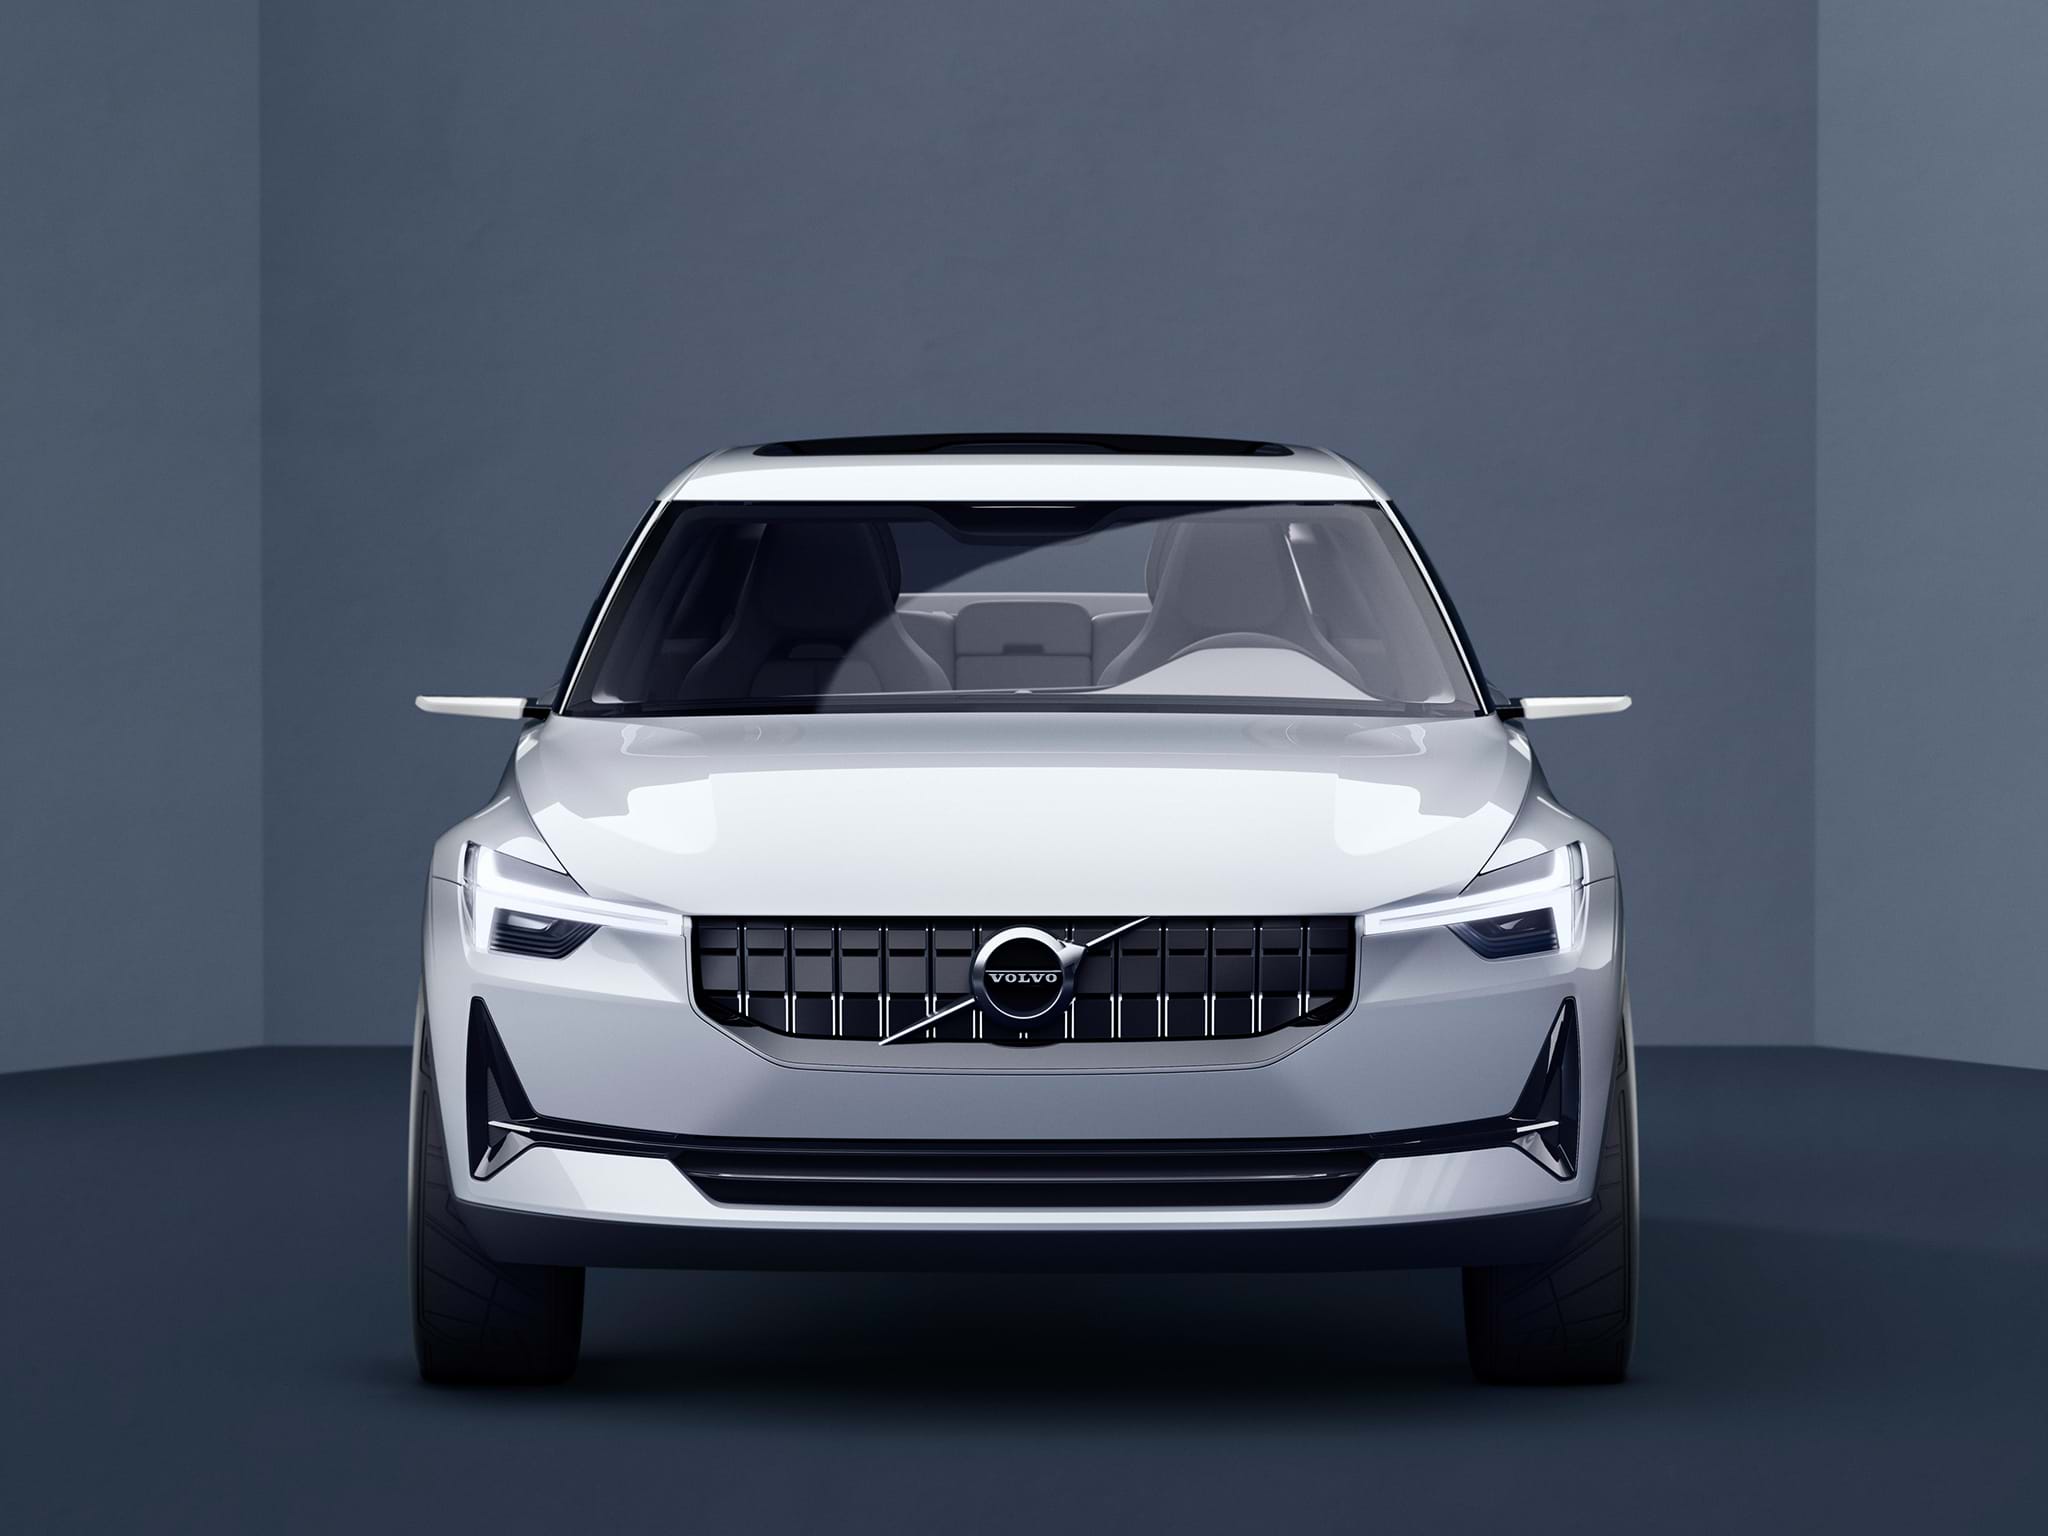 Carro sedan Volvo Concept 40 branco visto de frente